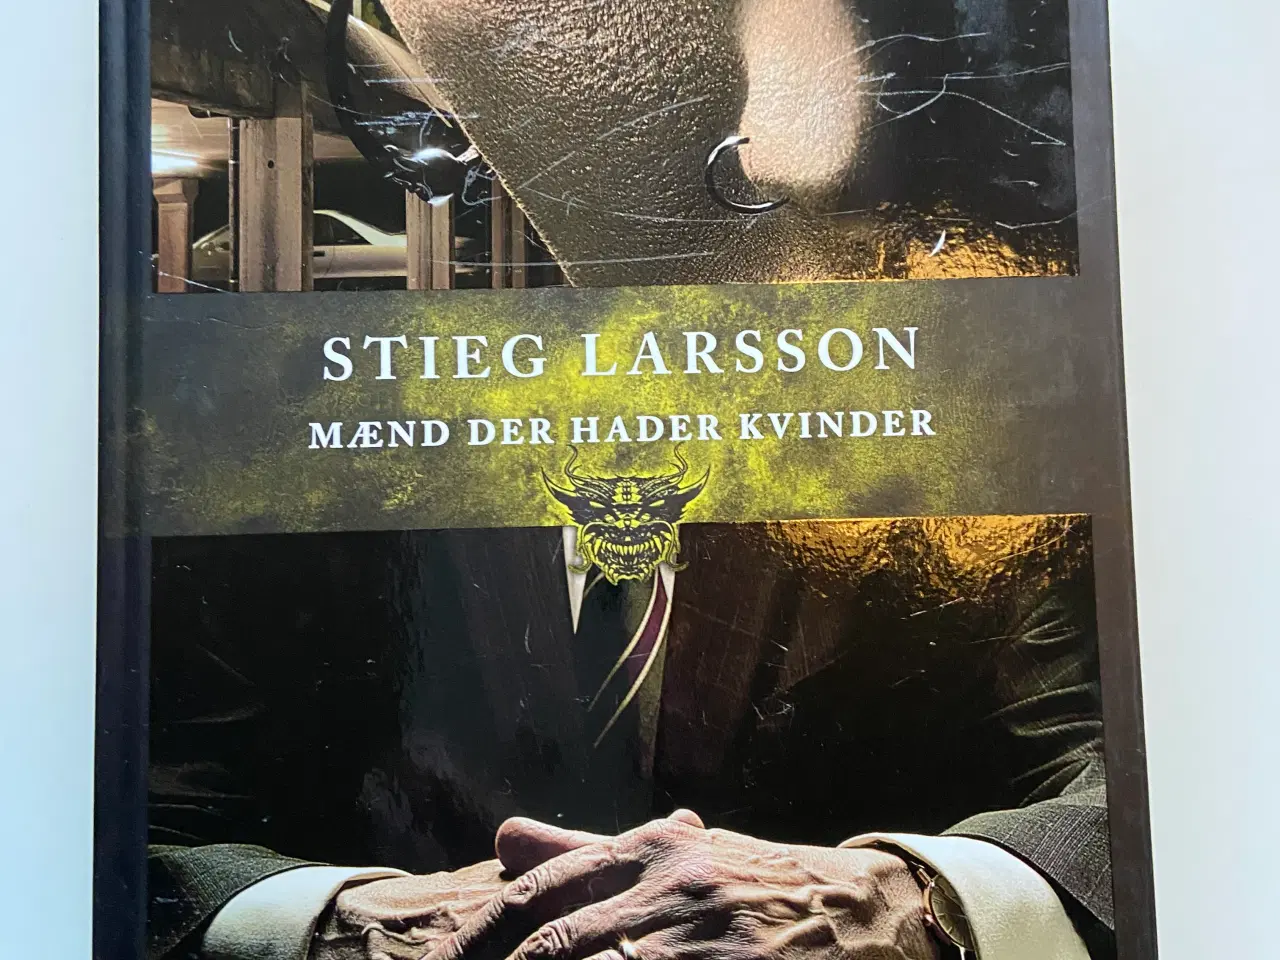 Billede 1 - 3 Stieg Larsson bøger 40,- samlet